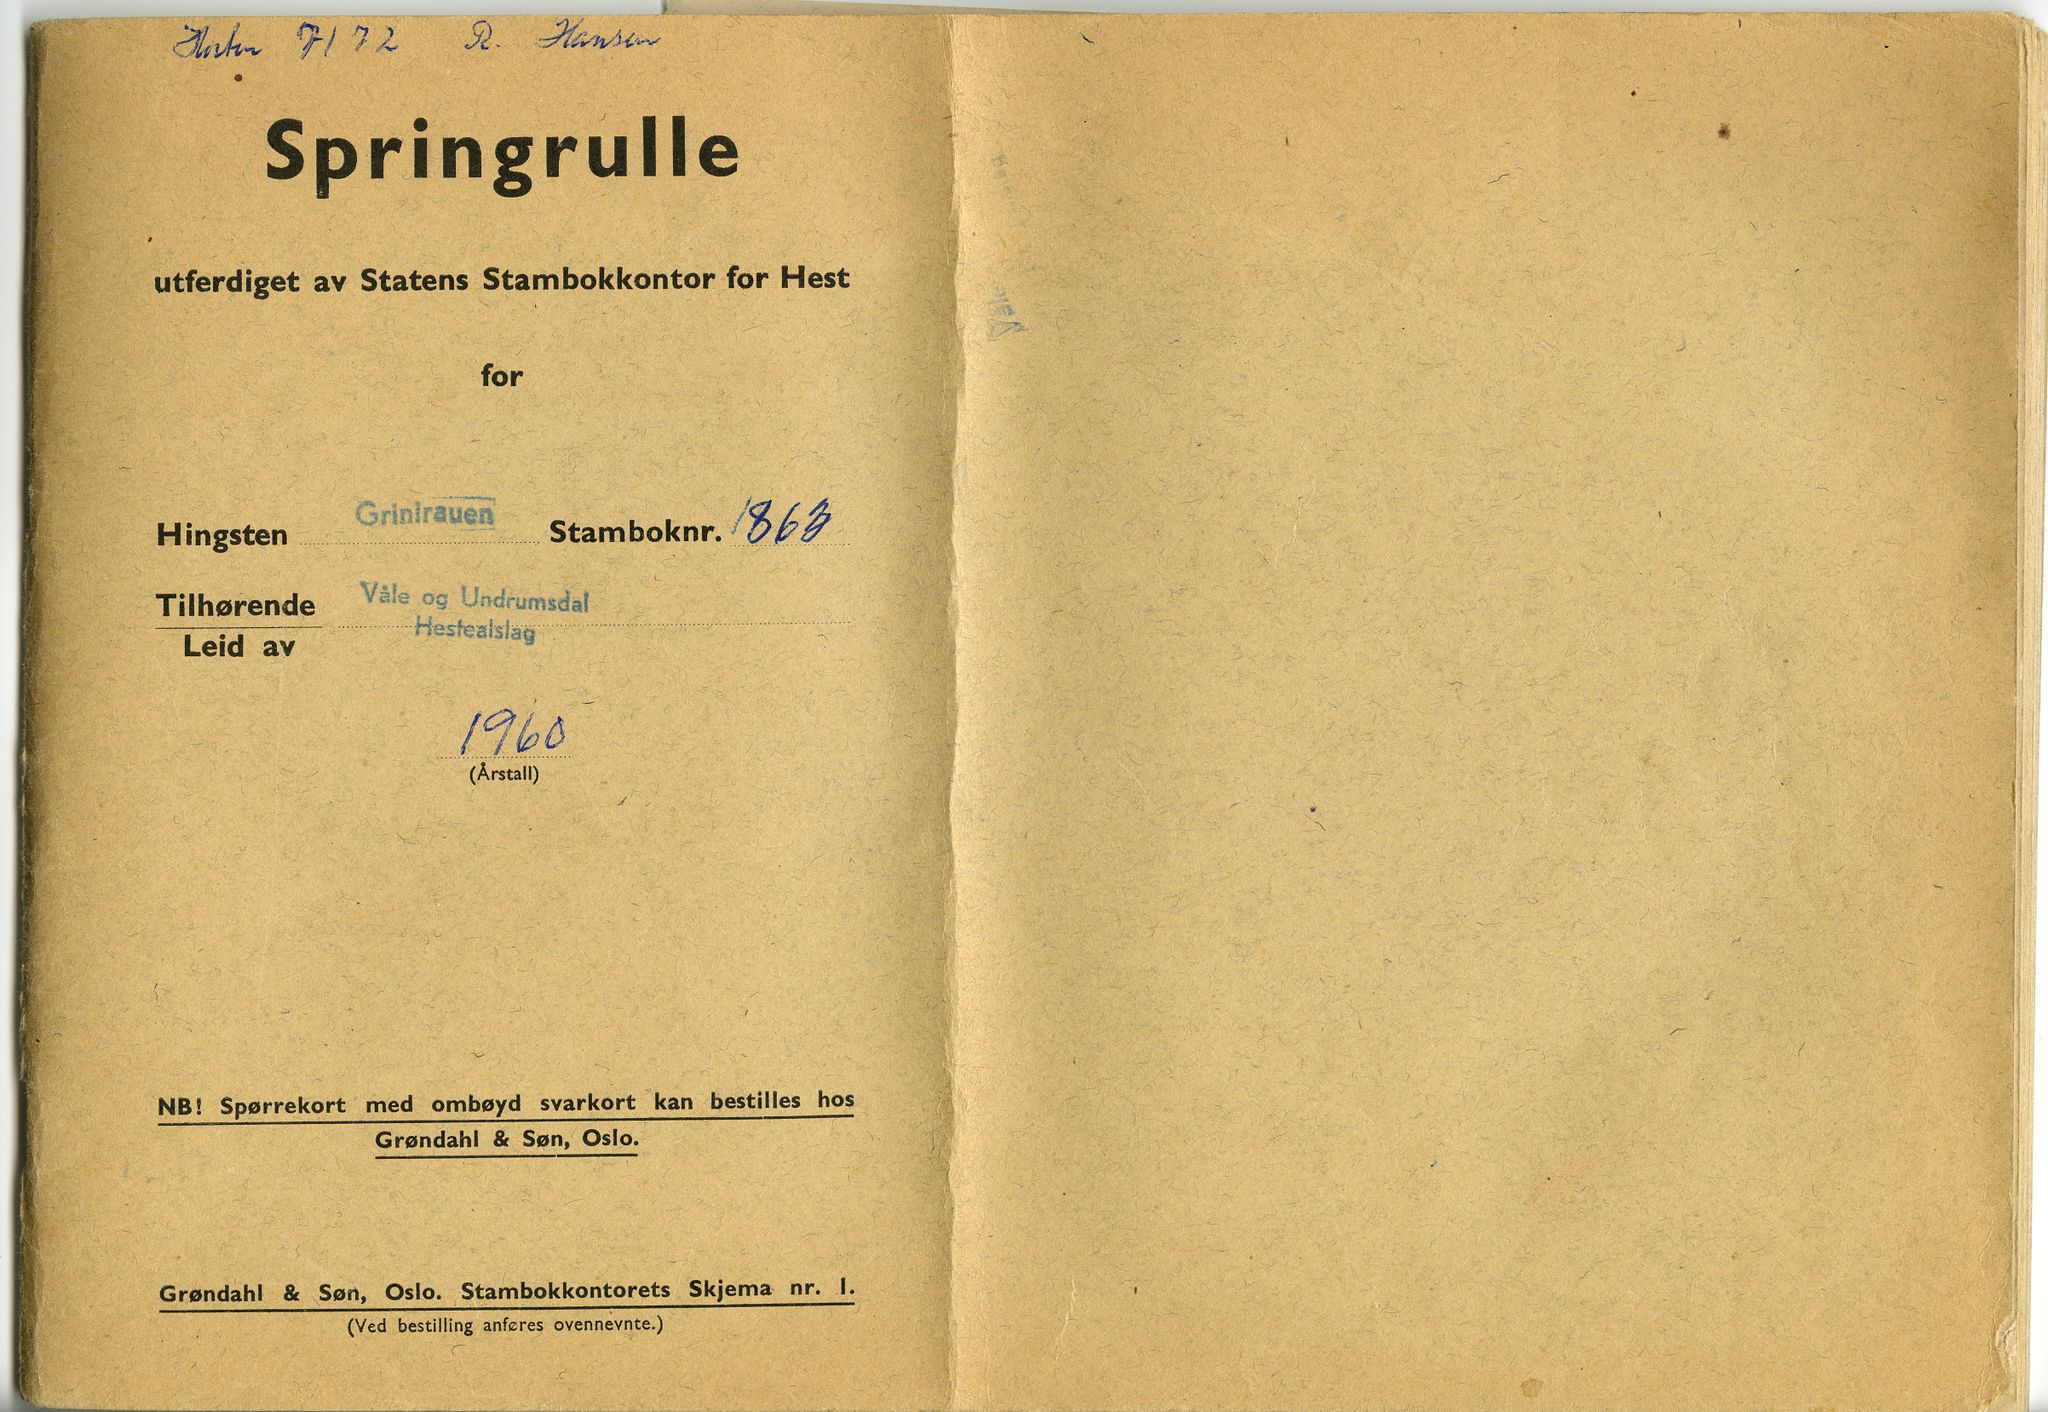 Pa 99 - Våle og Undrumsdals Hesteavlsforening, VEMU/A-1125/F/0001/0001 / Springruller, 1960